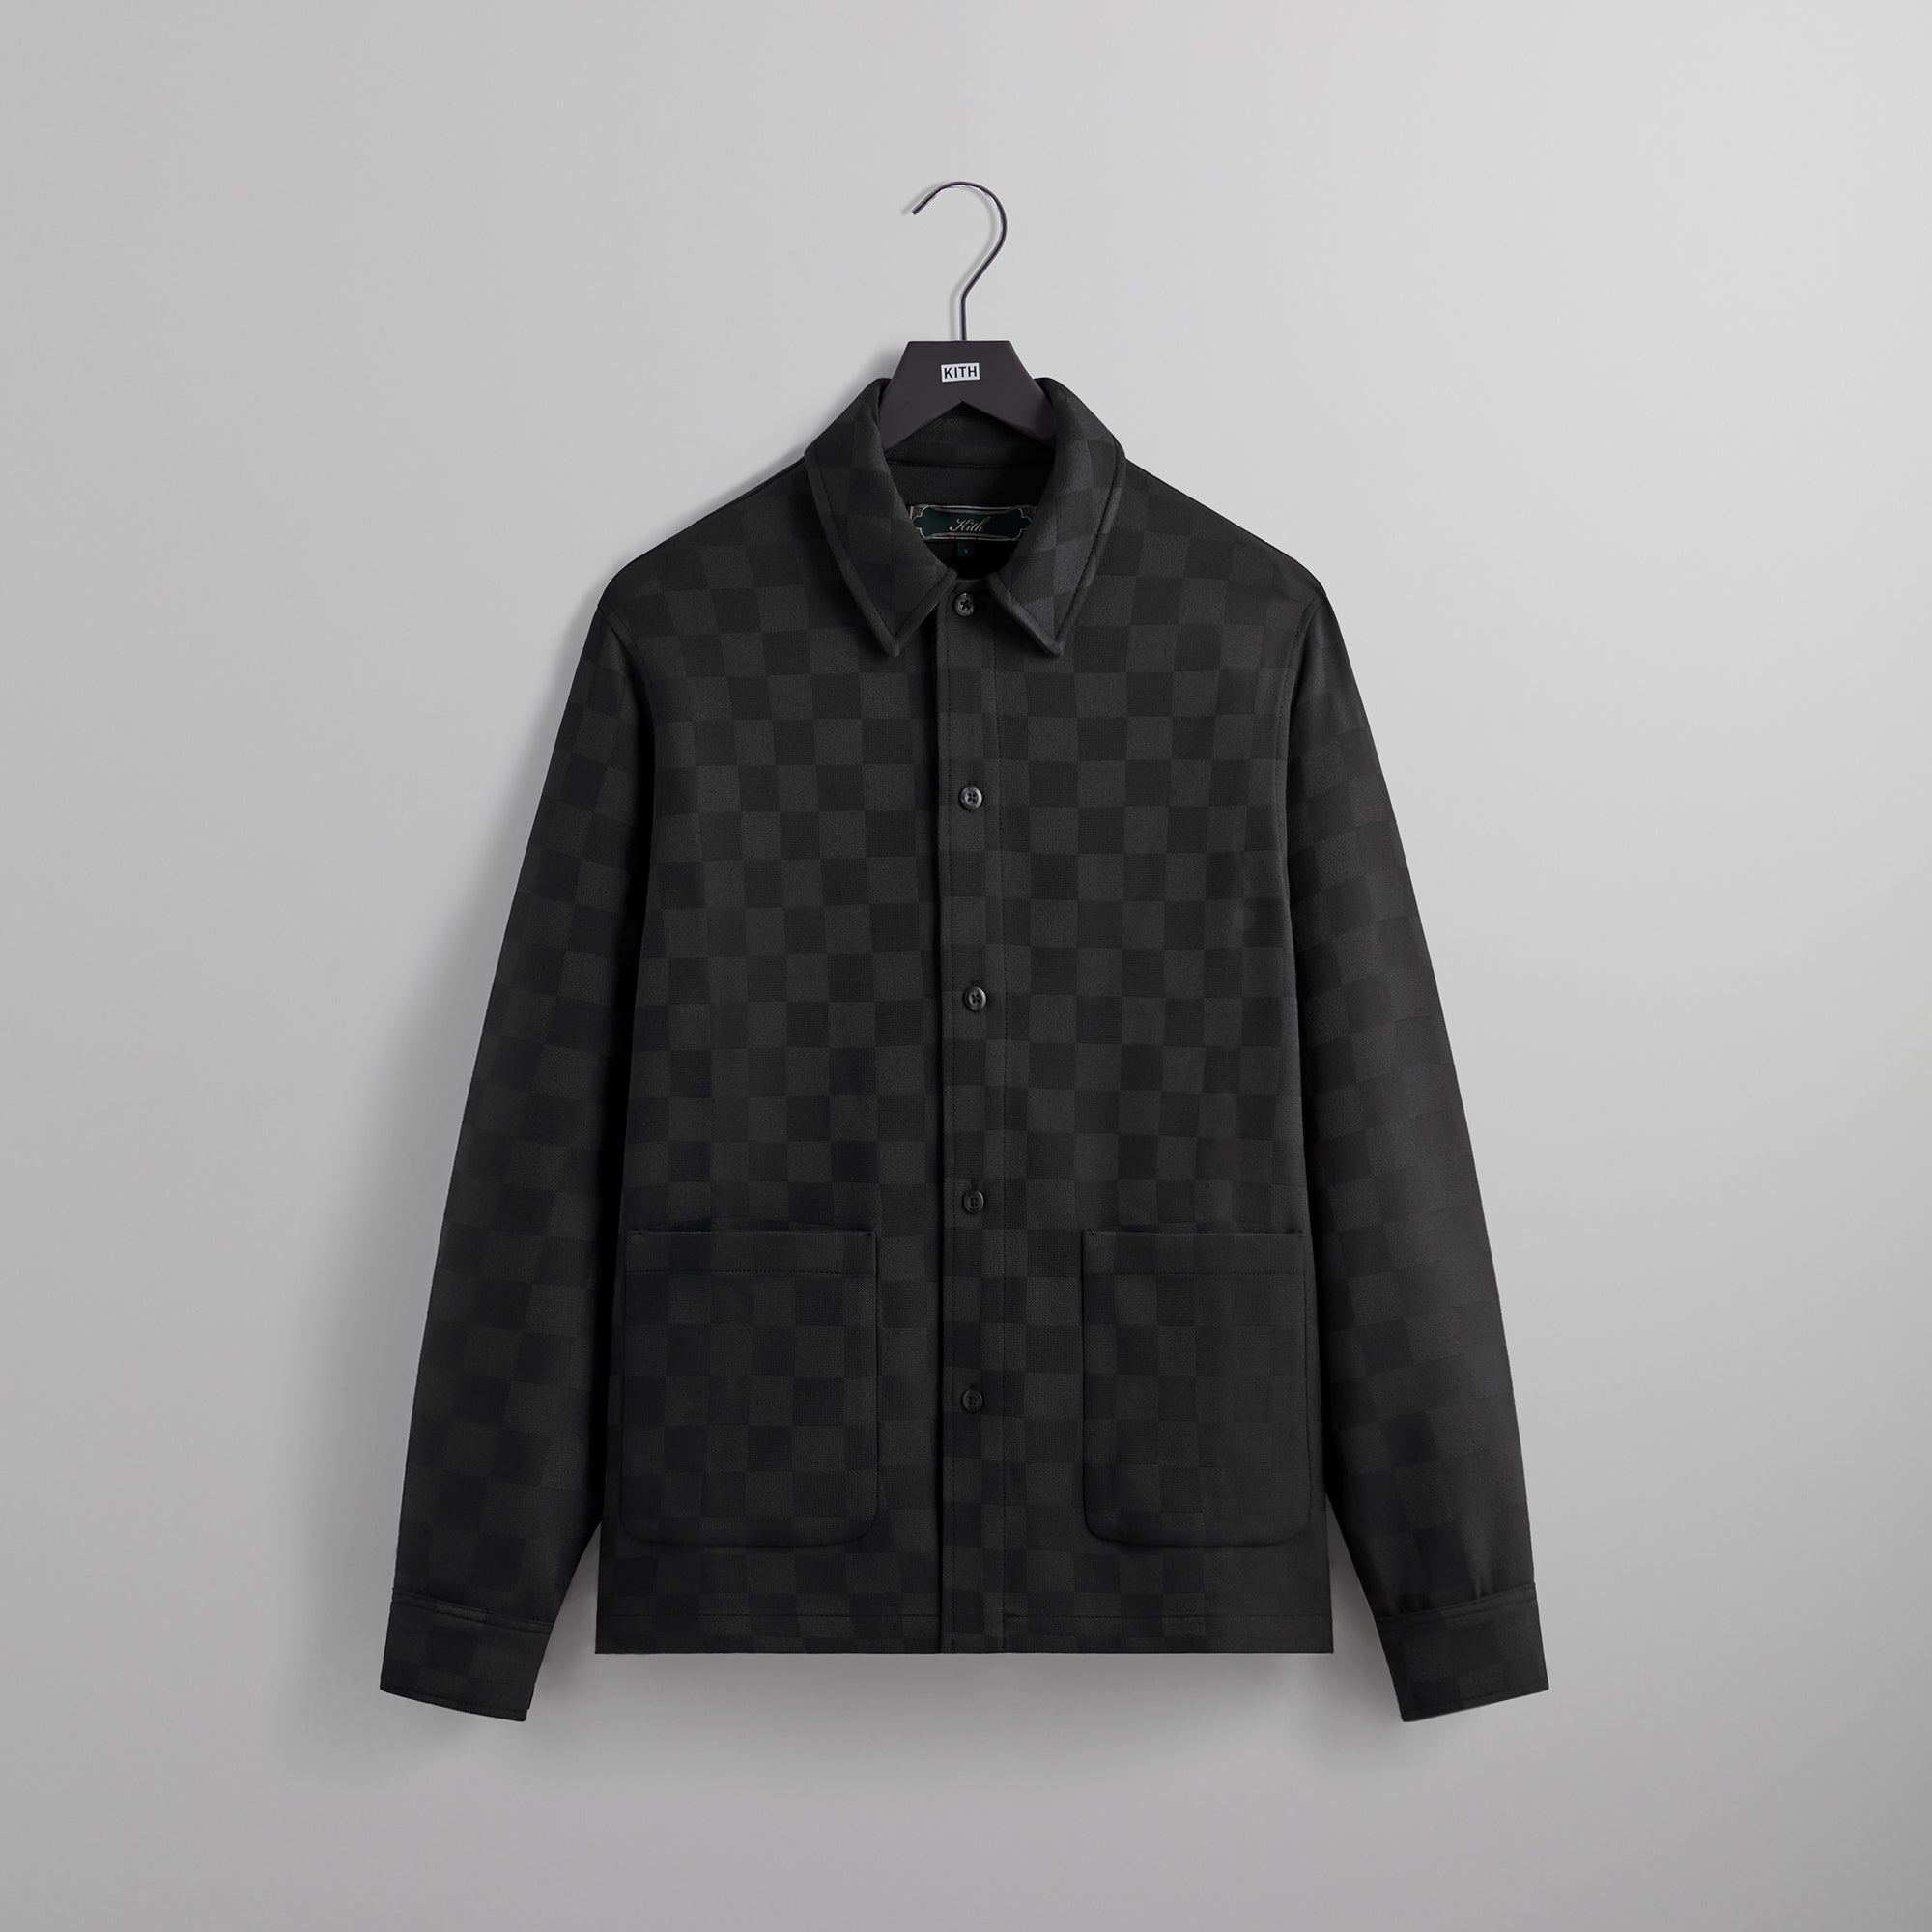 Kith Boxy Collared Overshirt - Black – Kith Europe